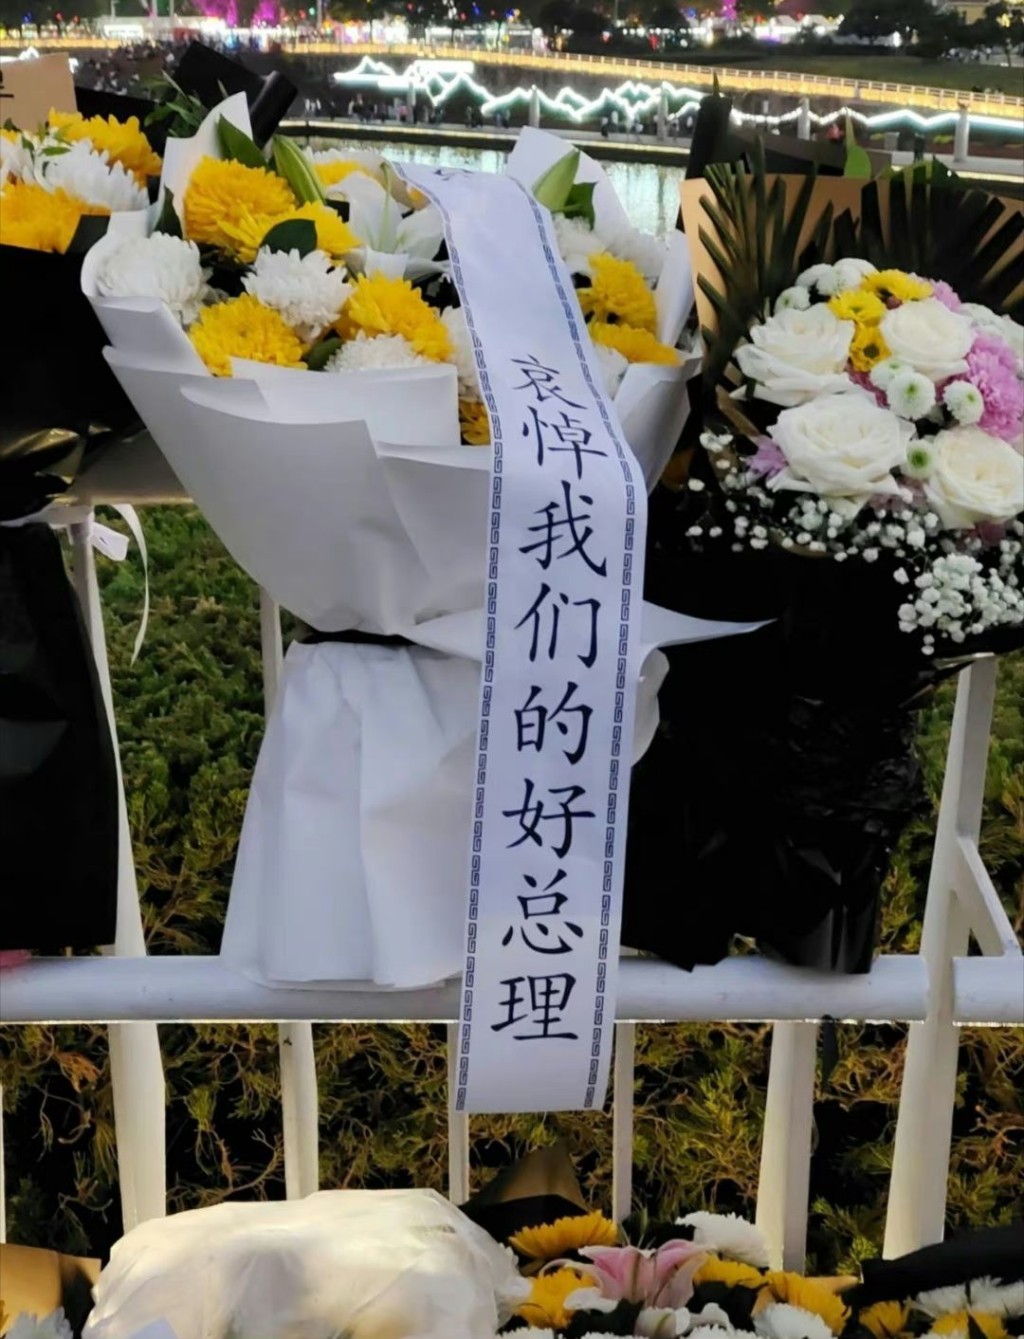 花束上貼有「哀悼我們的好總理」標語。